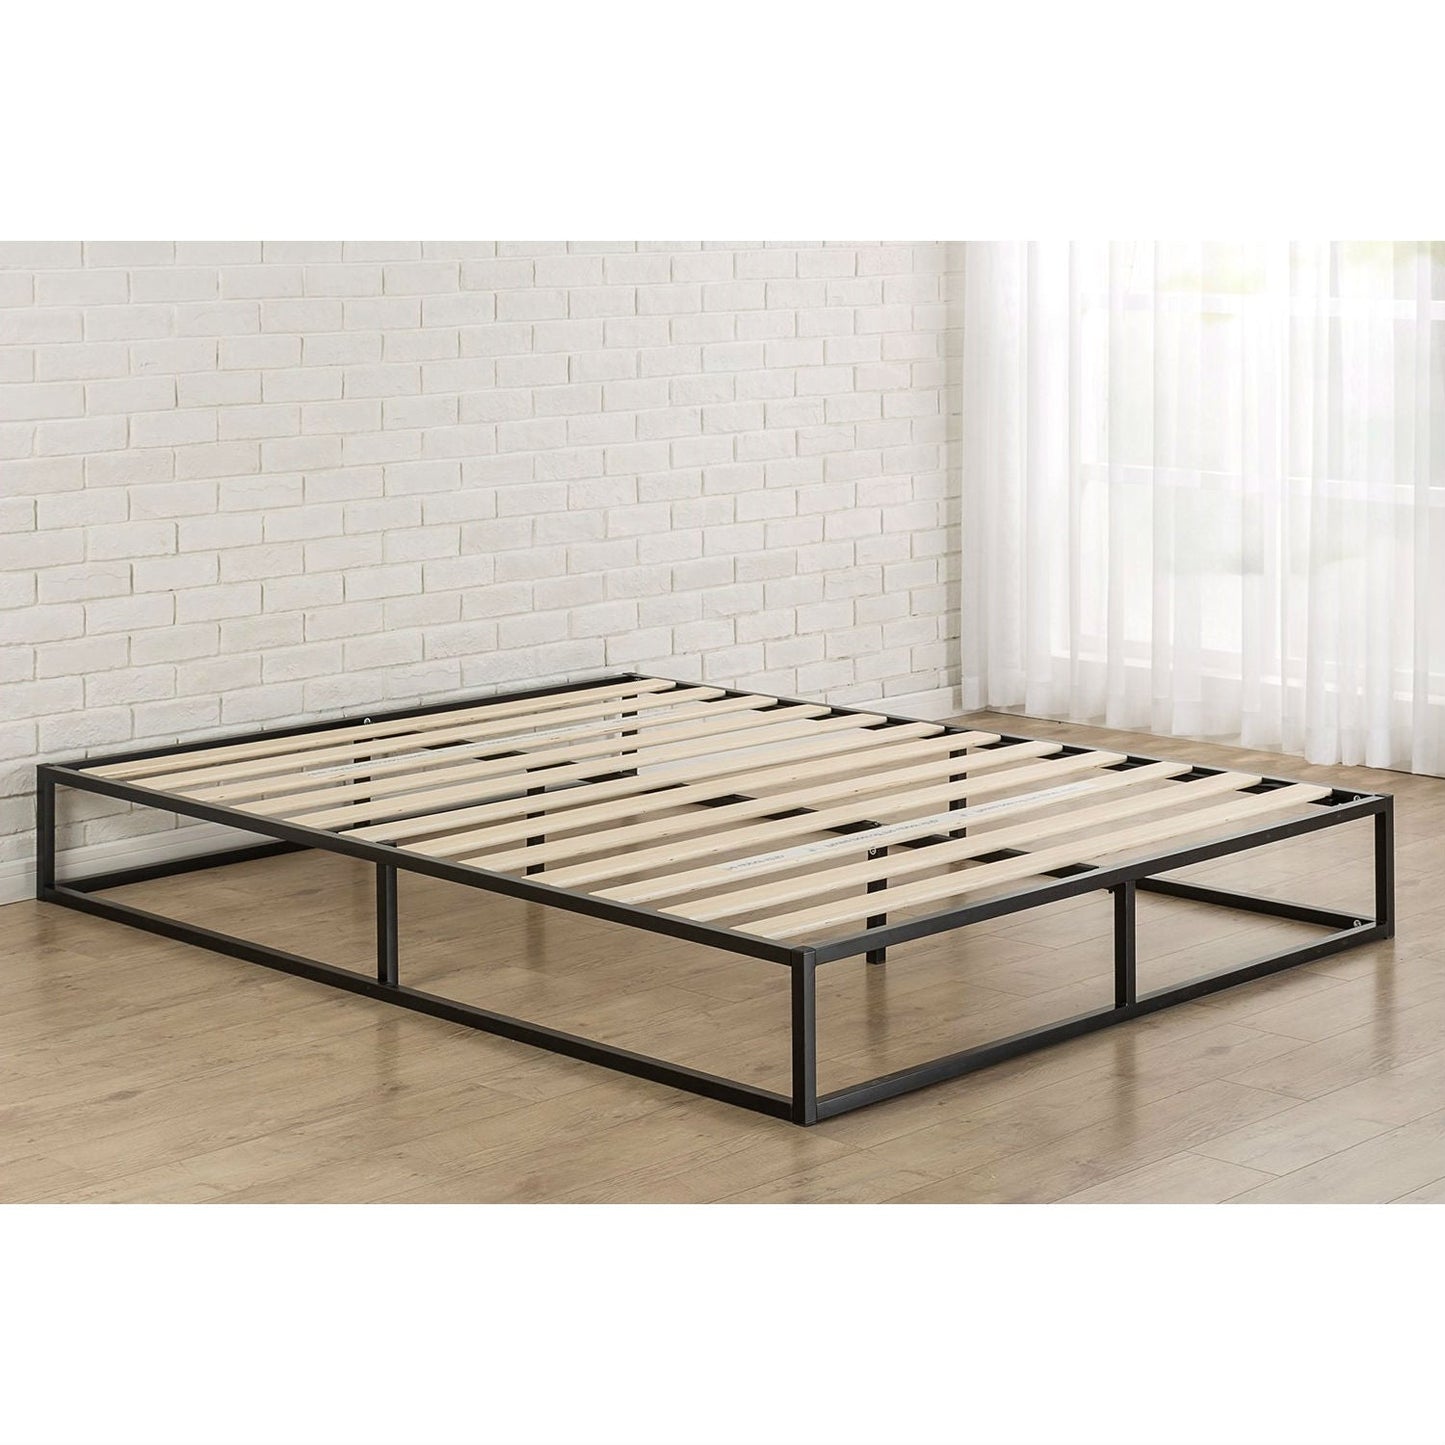 Bedroom > Bed Frames > Platform Beds - Twin Size 10-inch Low Profile Modern Metal Platform Bed Frame With Wooden Slats